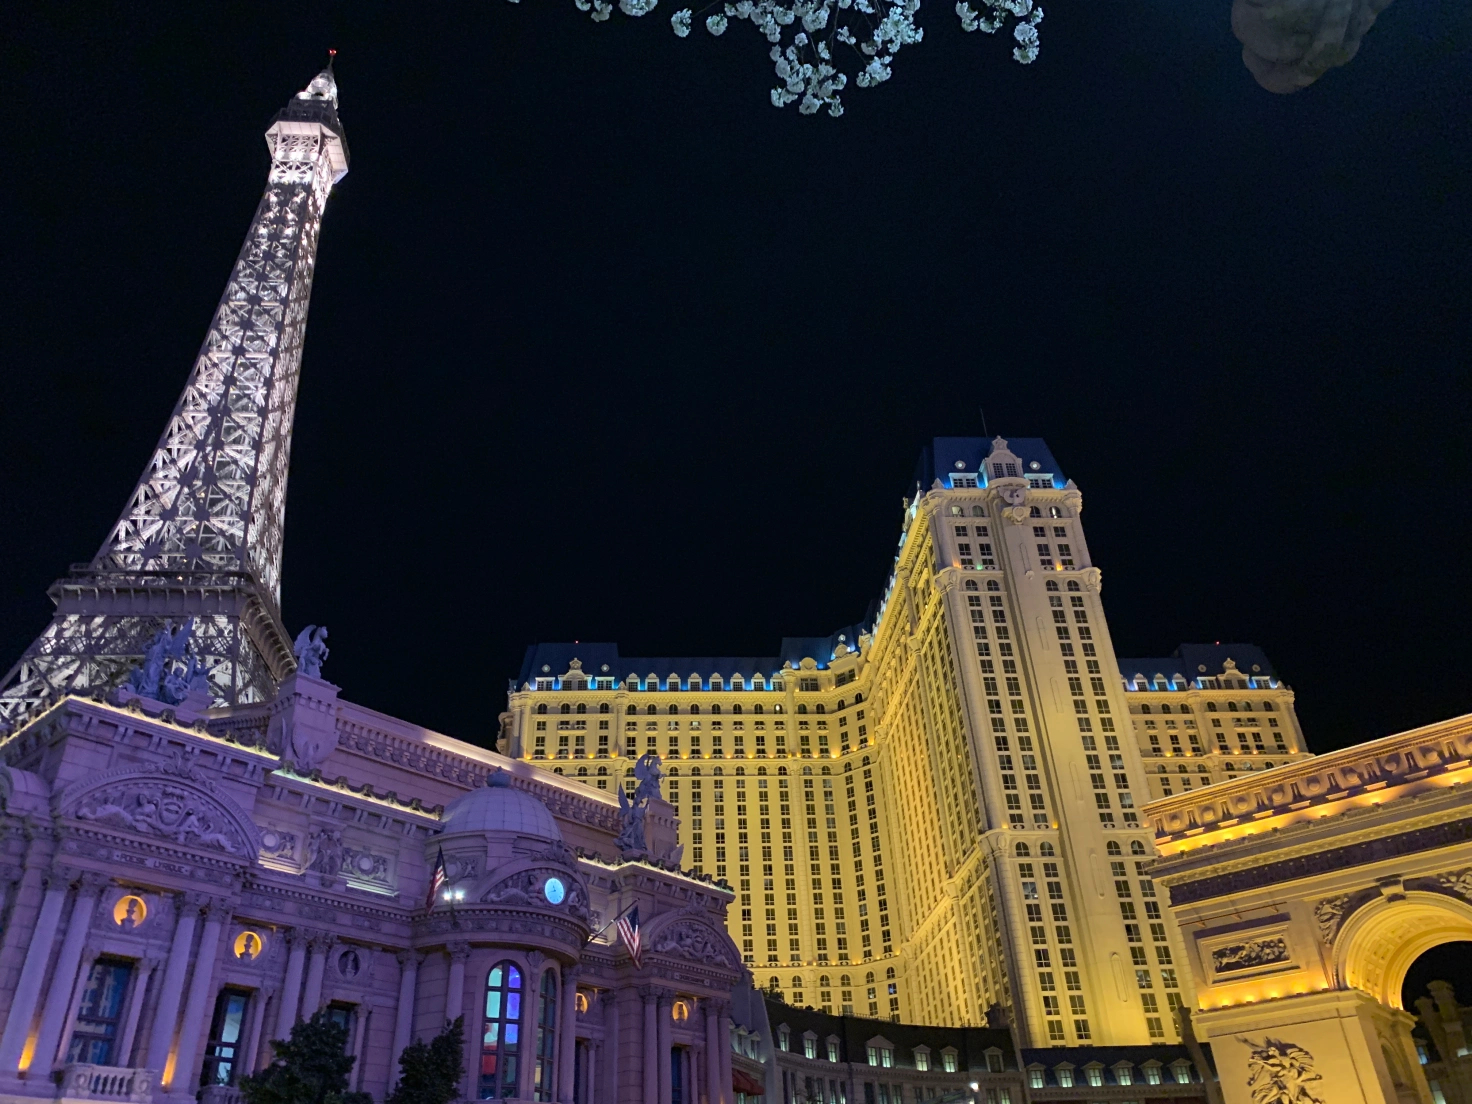 Vegas hotels lit up at night